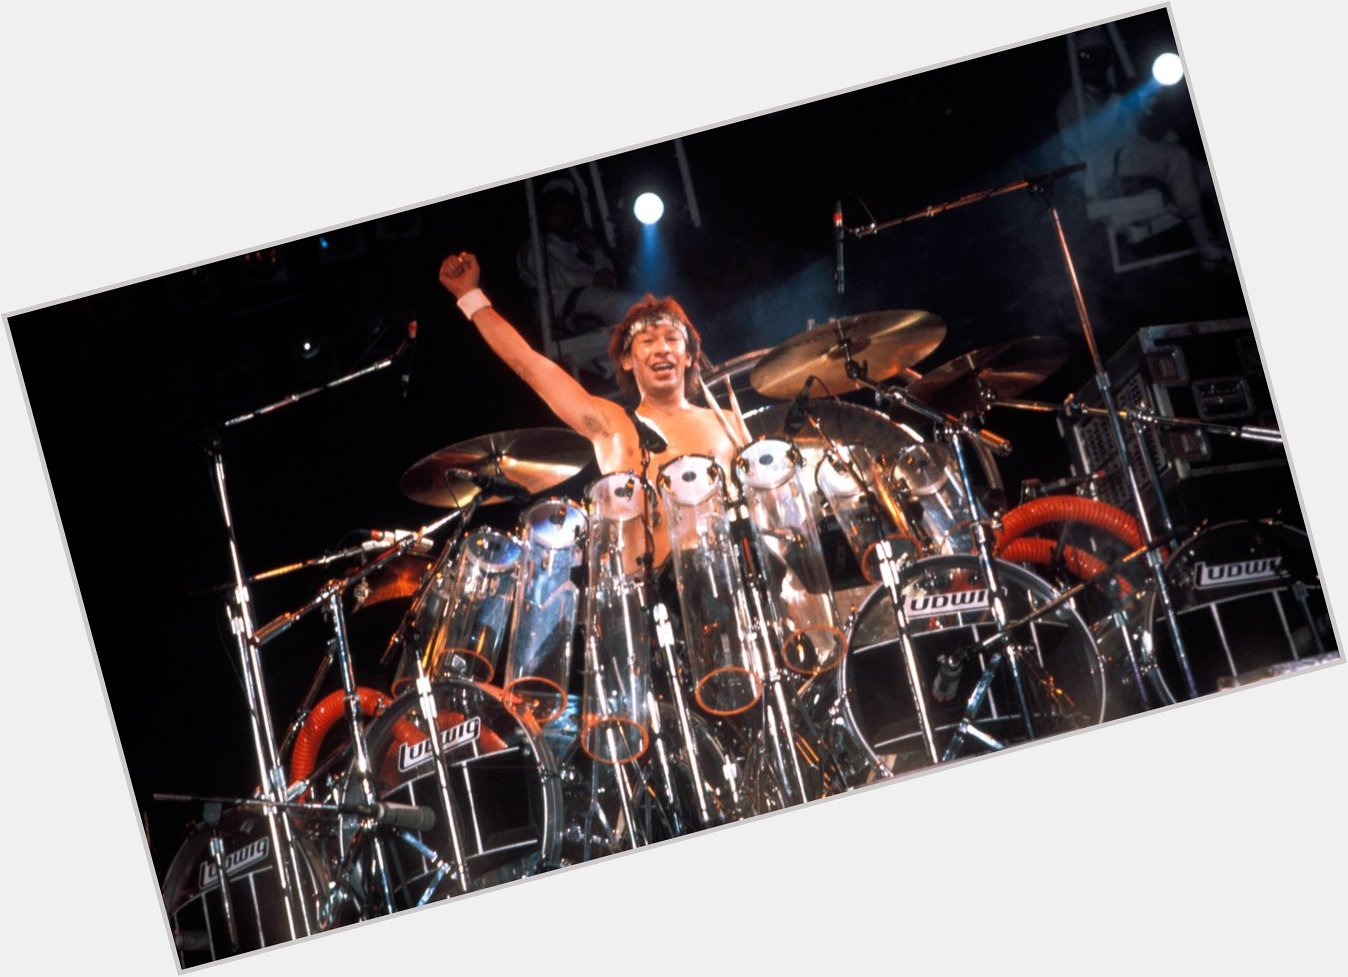 Happy Birthday to Van Halen Drummer Alex Van Halen. He turns 67 today. 